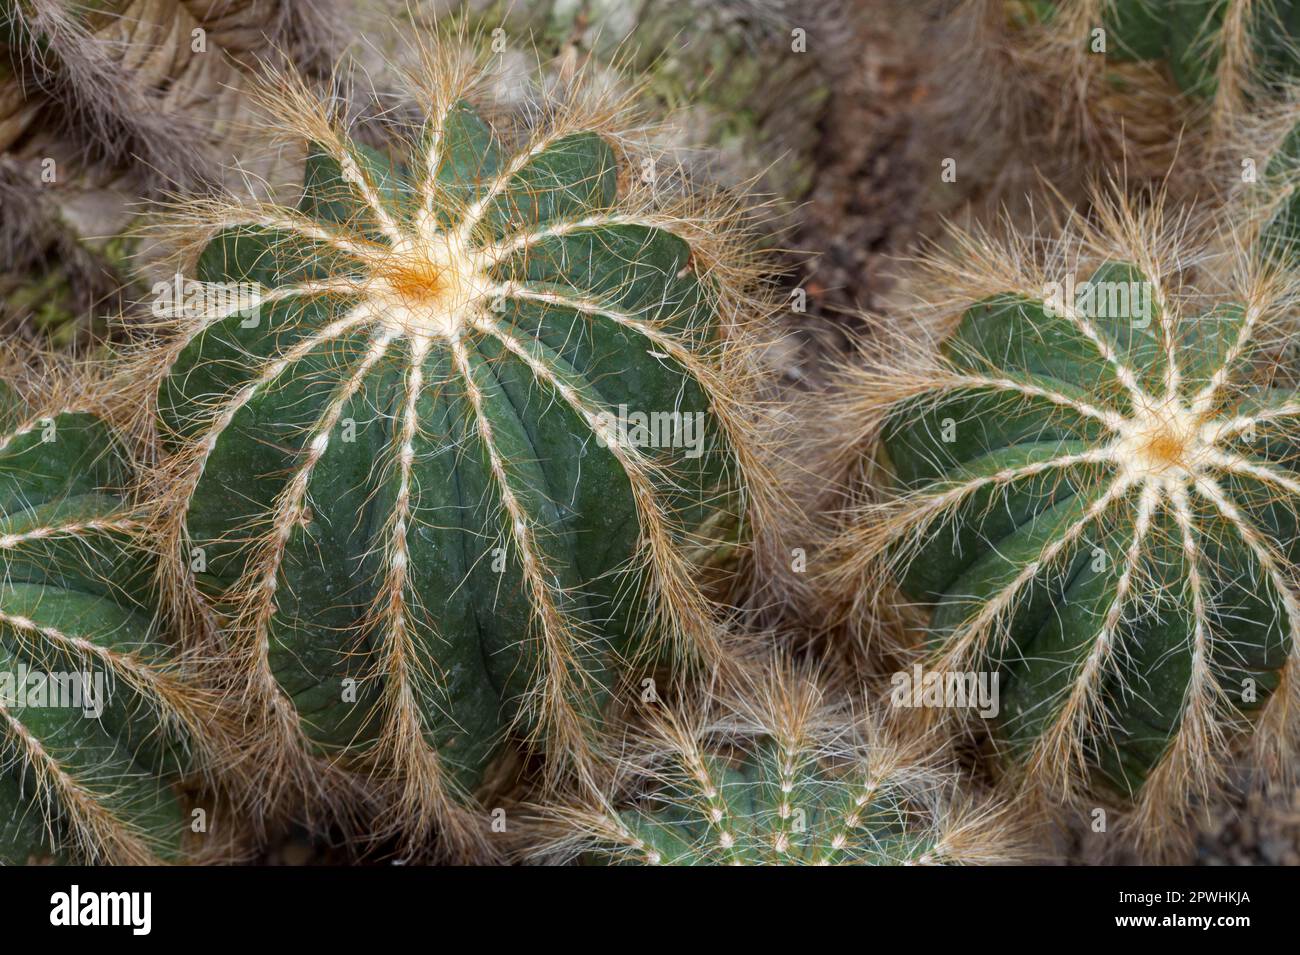 Cactus (Notocactus magnificus) Stock Photo